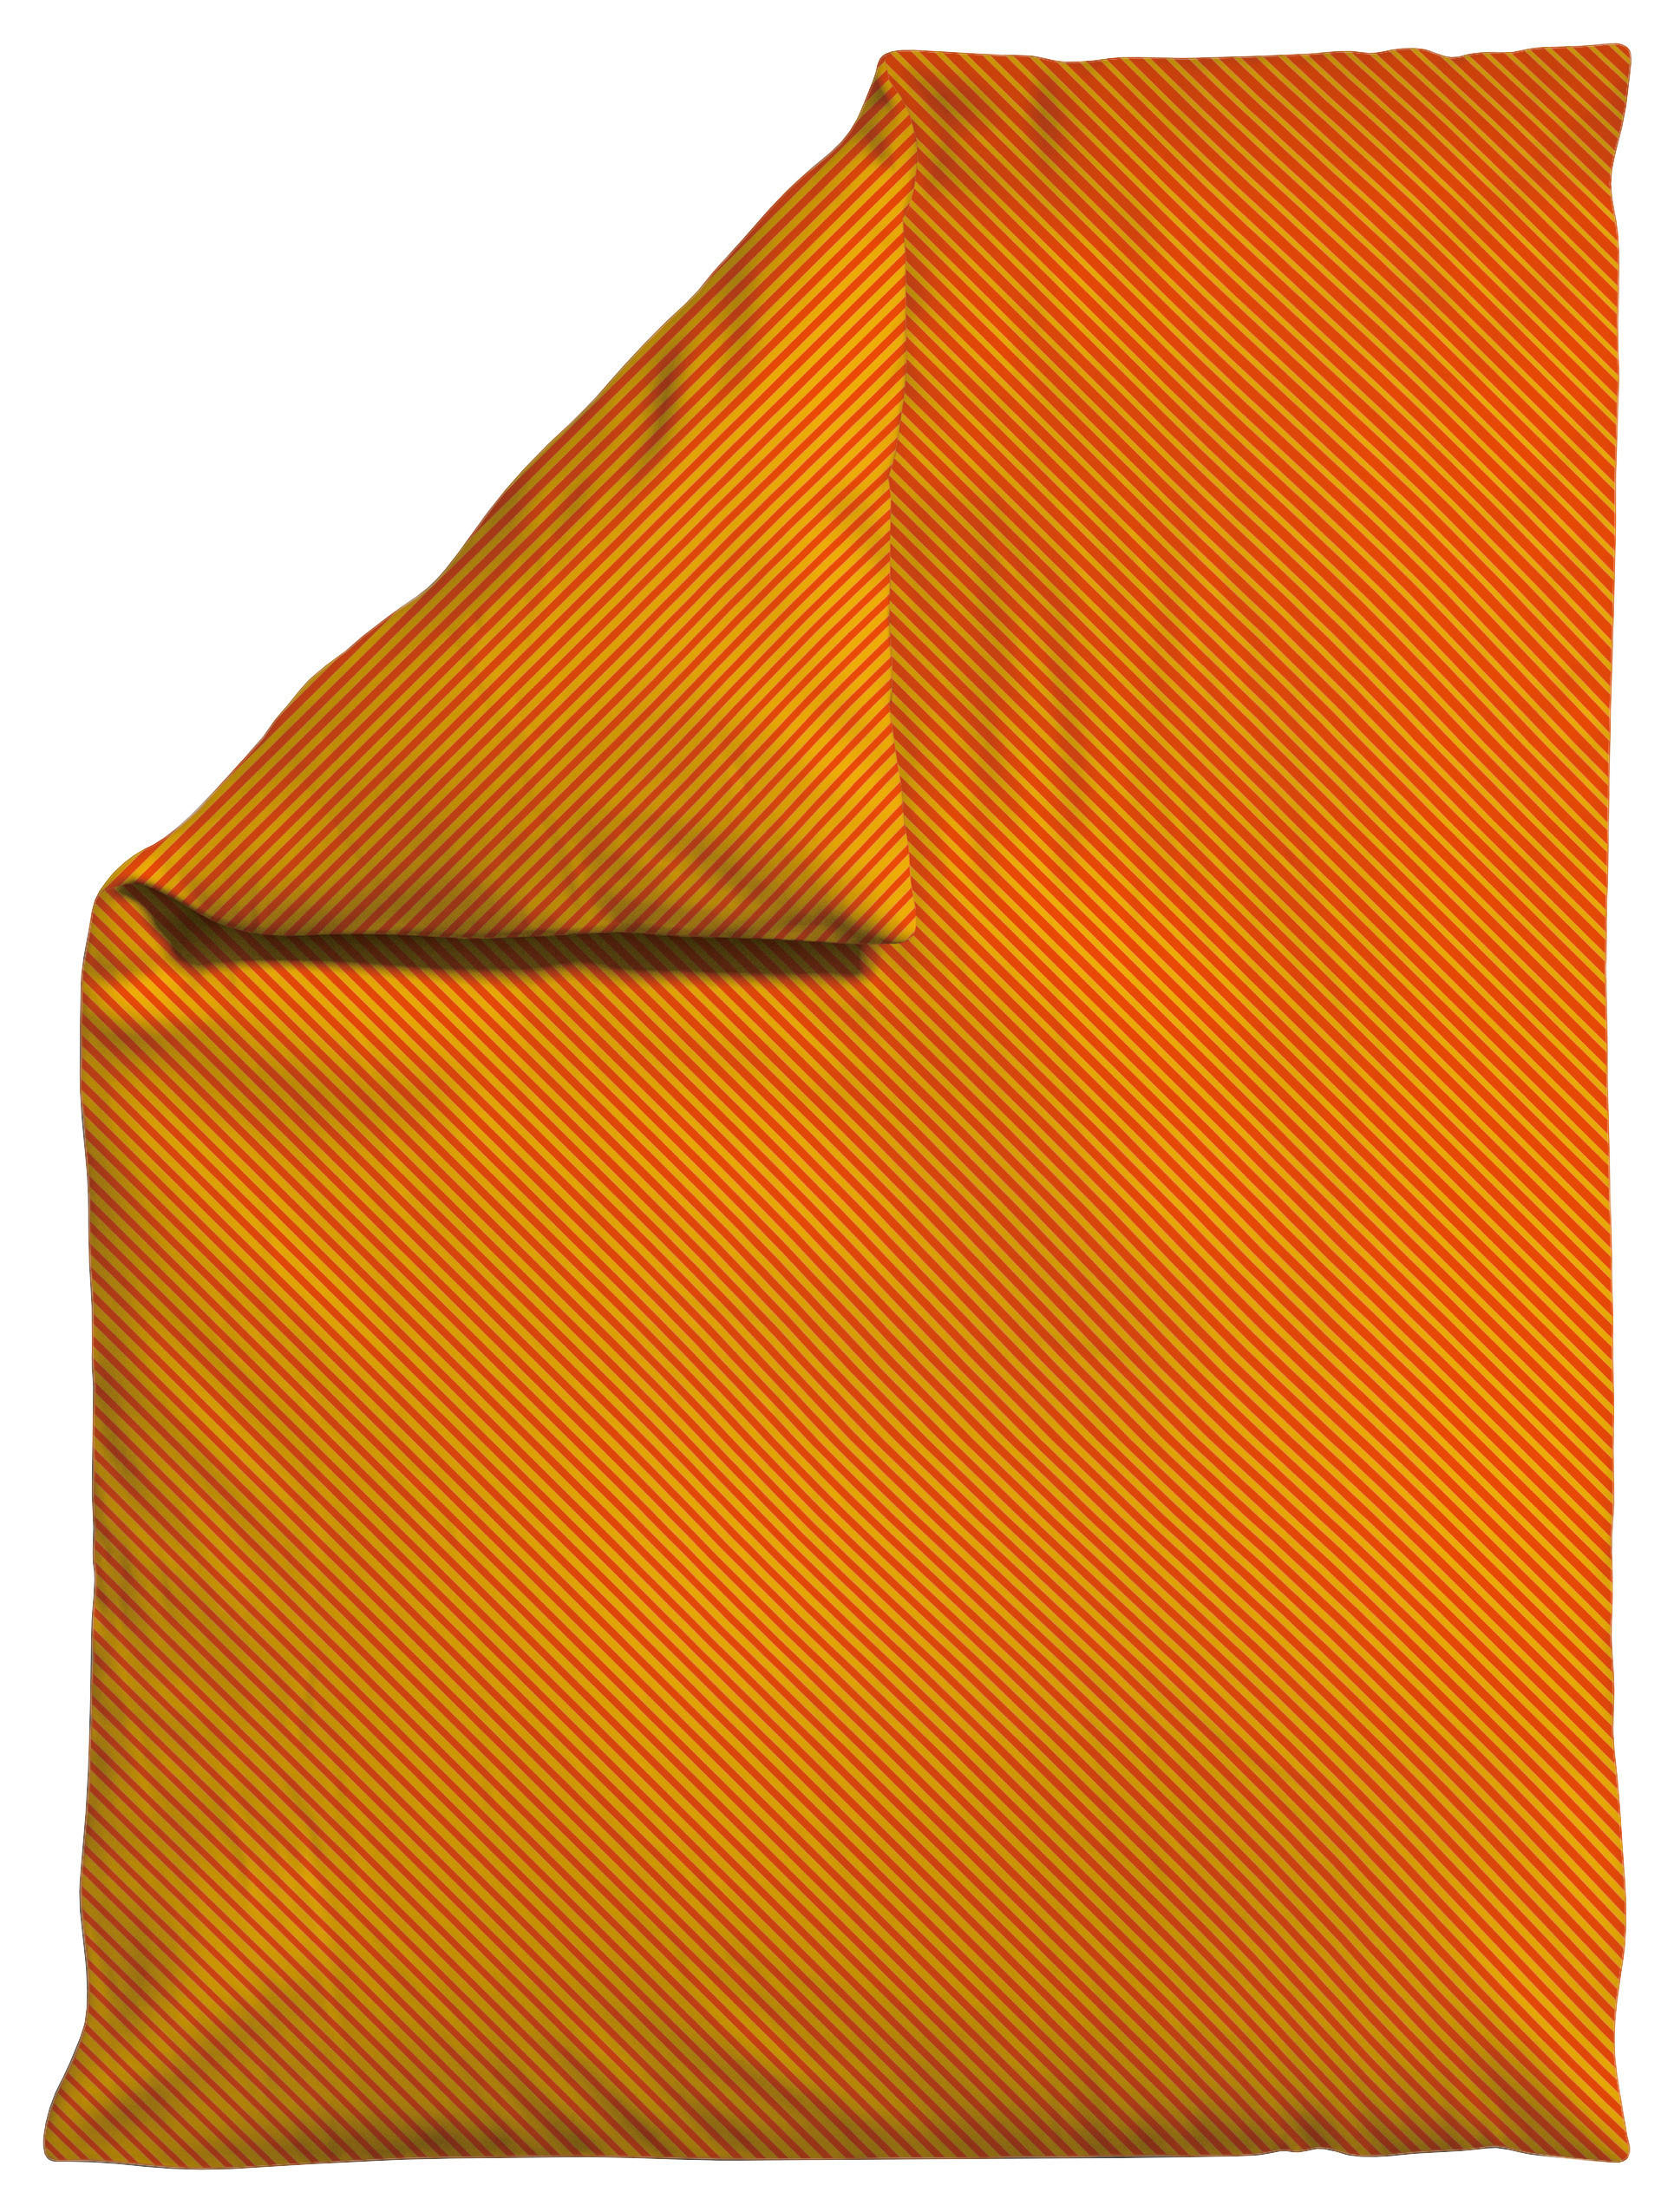 BETTDECKENBEZUG Woven Satin Fade Makosatin  - Gelb/Rot, Basics, Textil (135-140/200cm) - Schlafgut